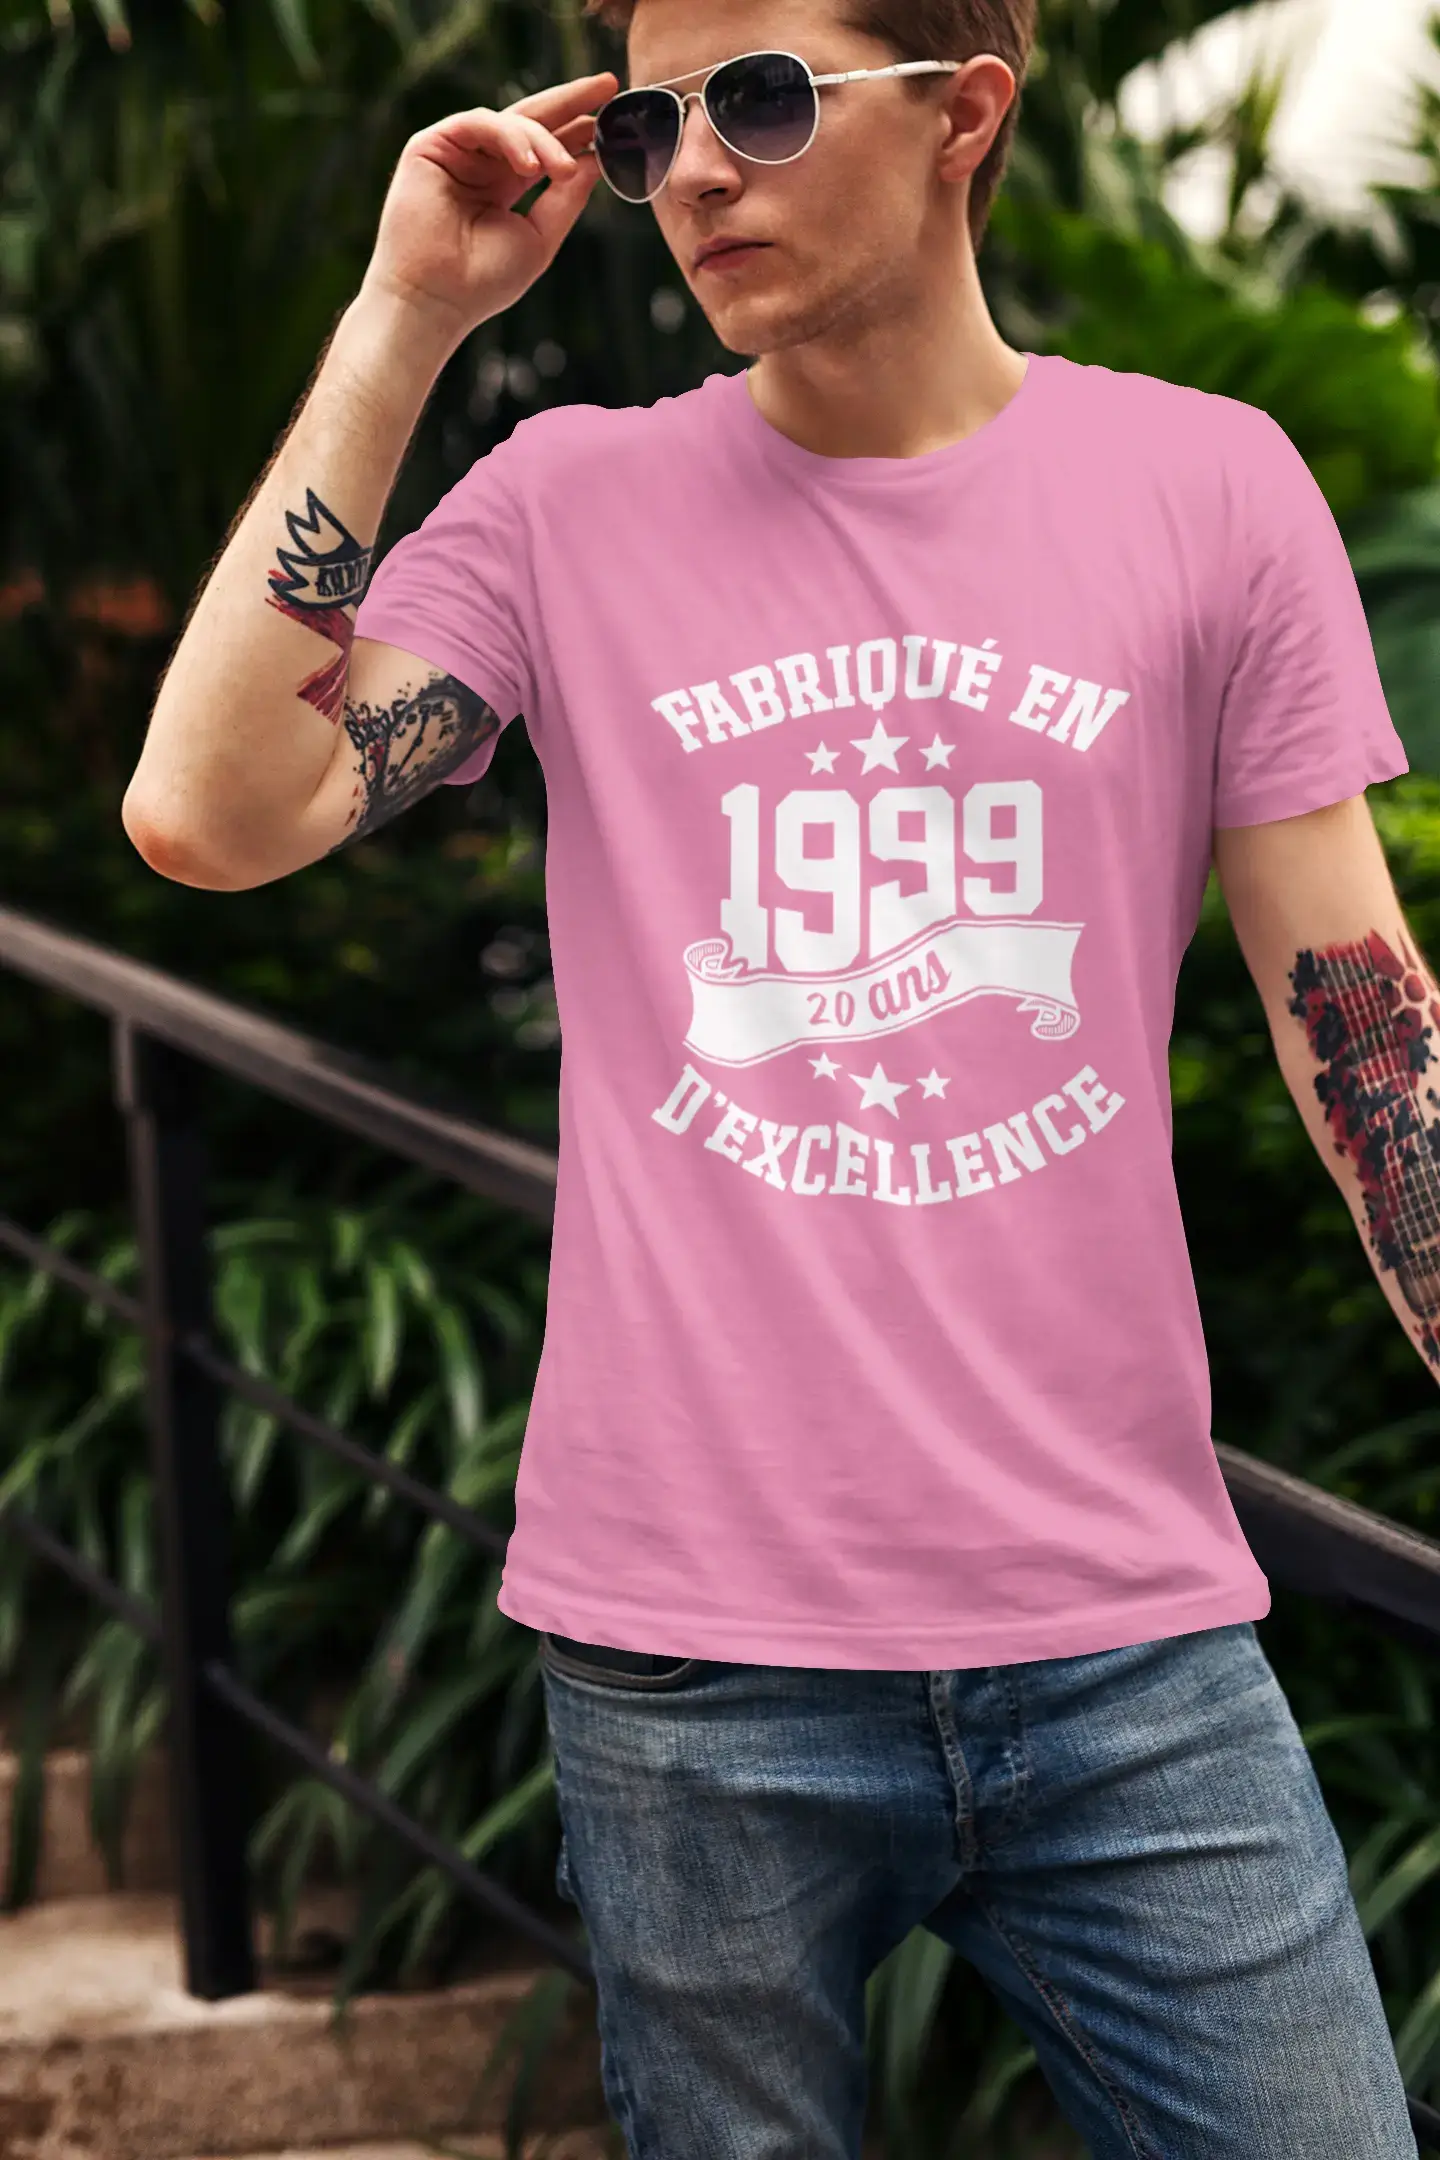 ULTRABASIC – Hergestellt im Jahr 1999, 20 Jahre alt. Original Unisex T-Shirt Rose Orchidée